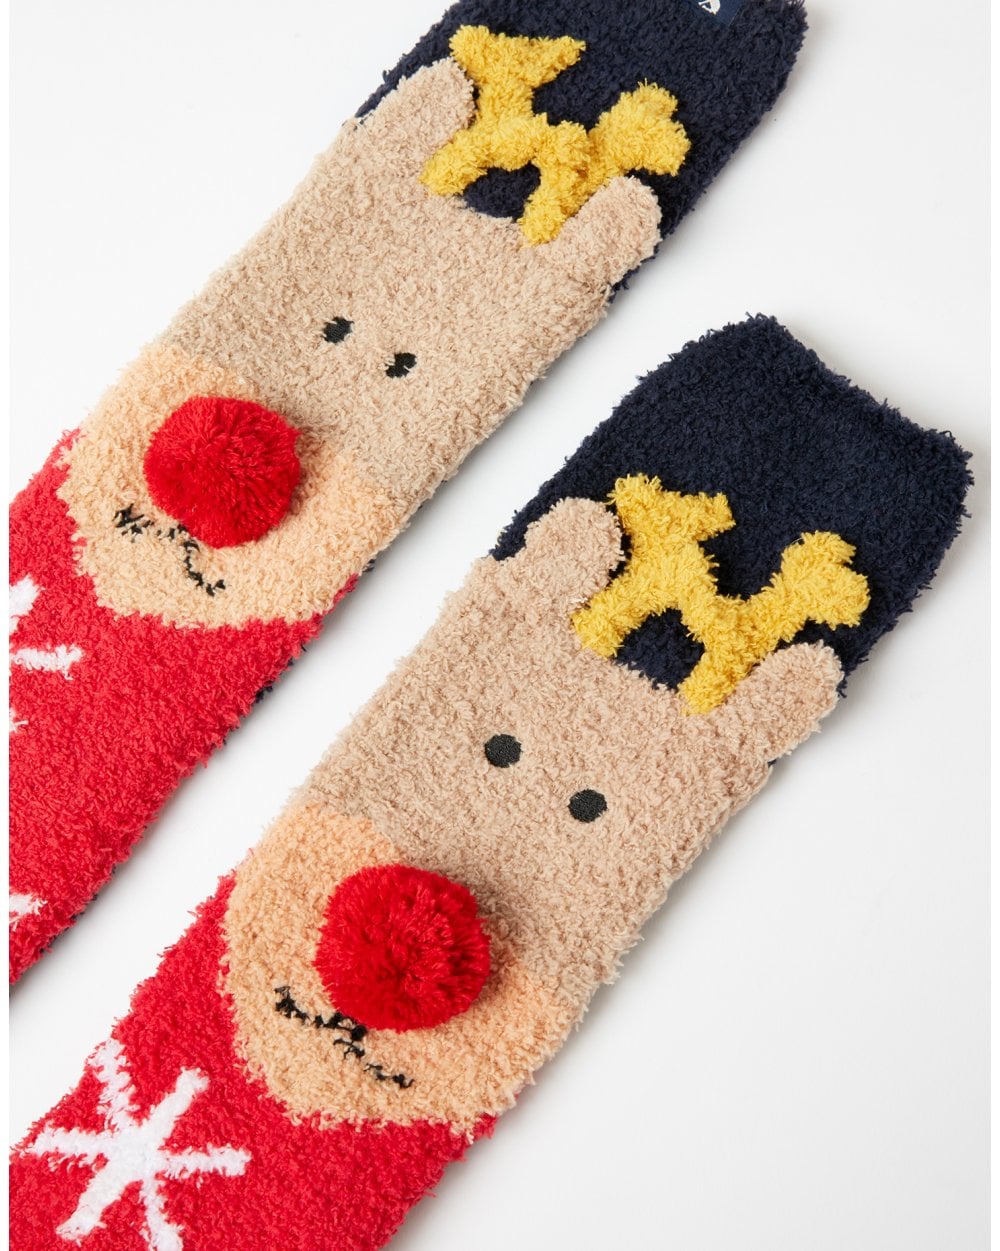 Festive Fluffy Socks